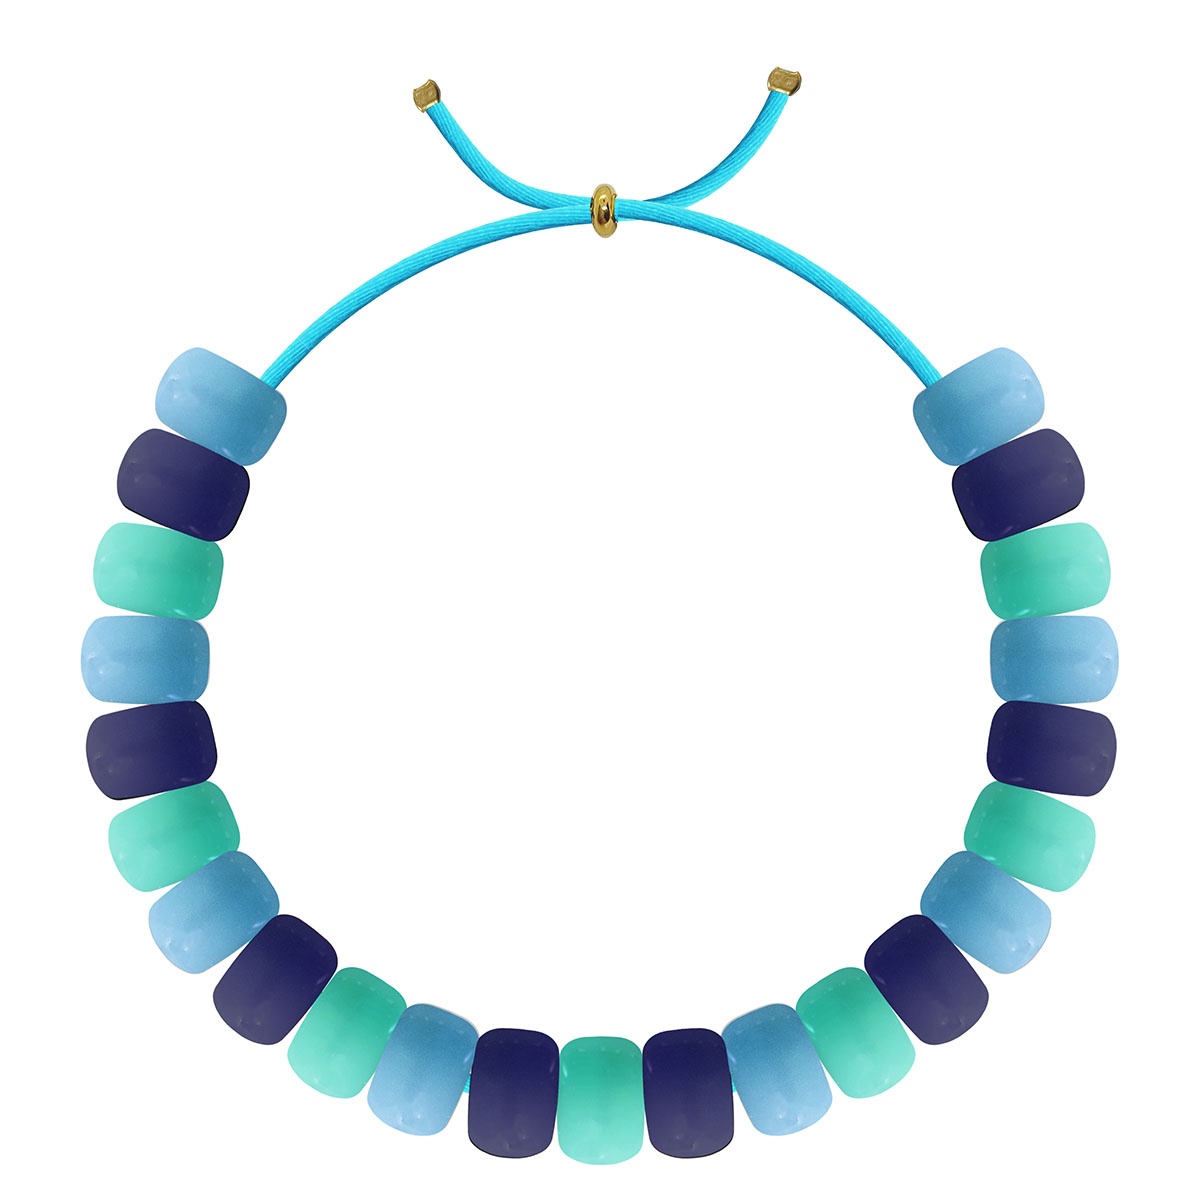 True Blue Pony Beads for bracelets, jewelry, arts crafts - Pony